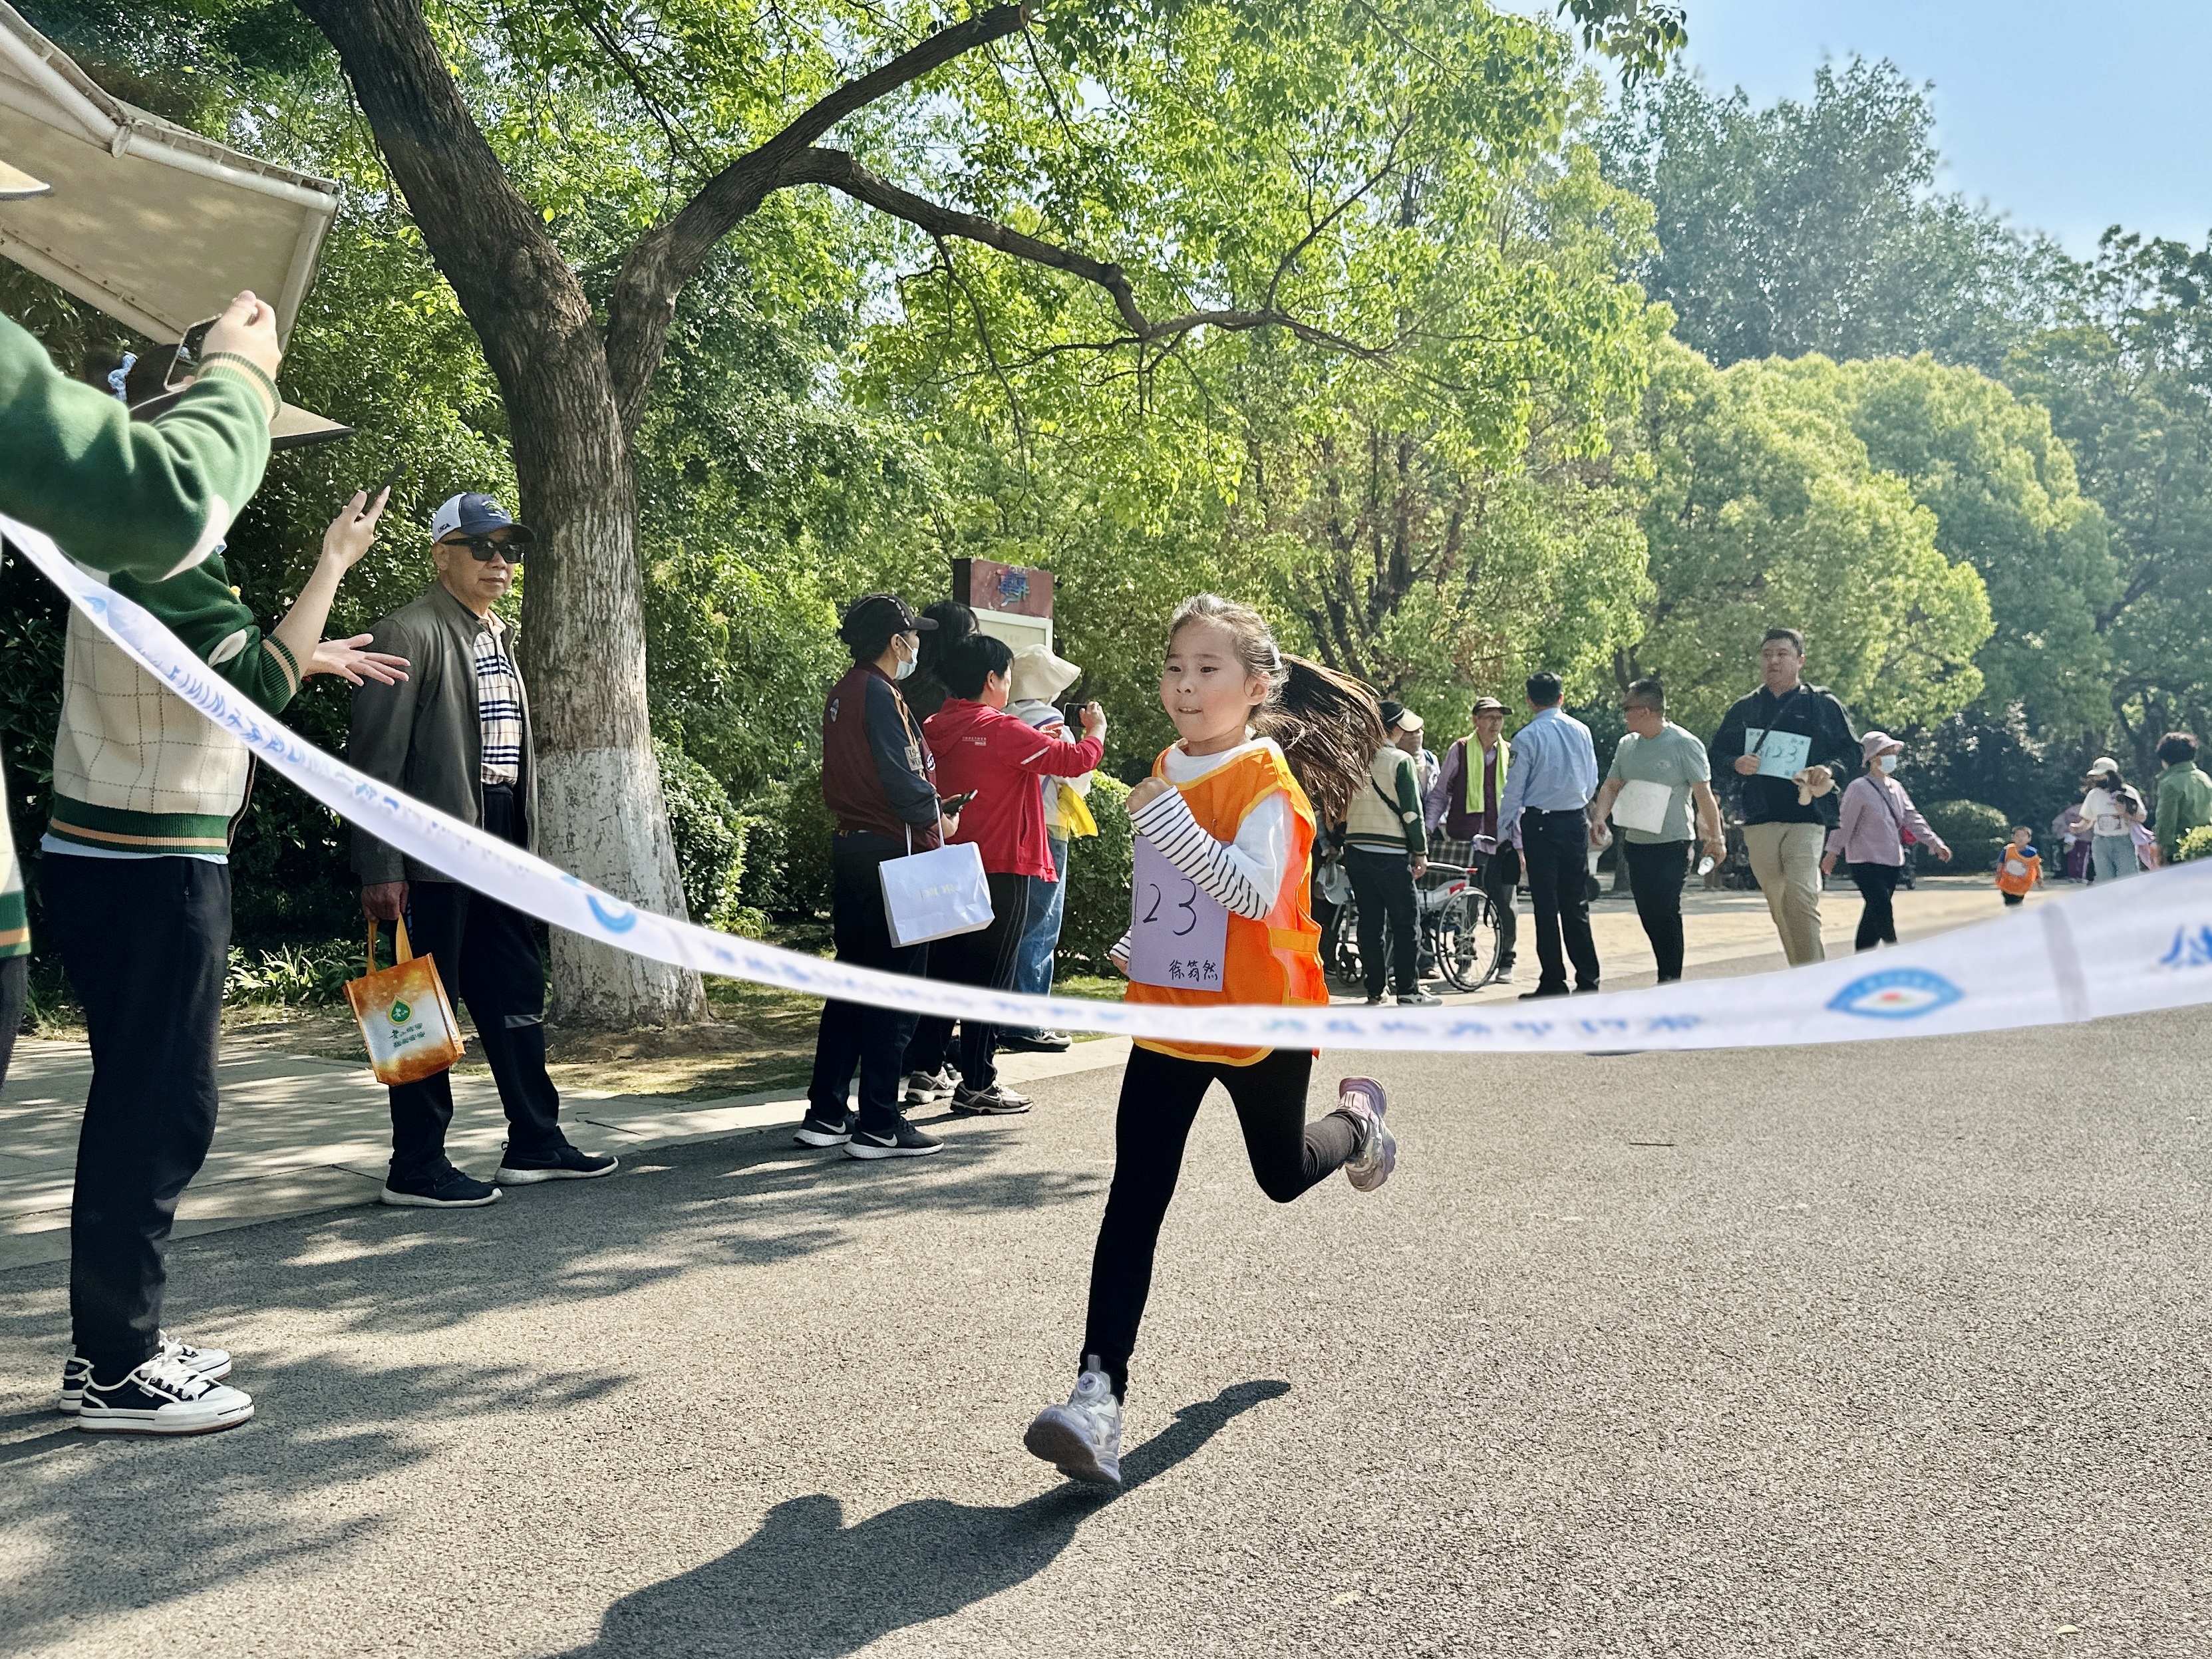 活力出发!徐州泉山区举办教工幼第五届亲子mini马拉松活动